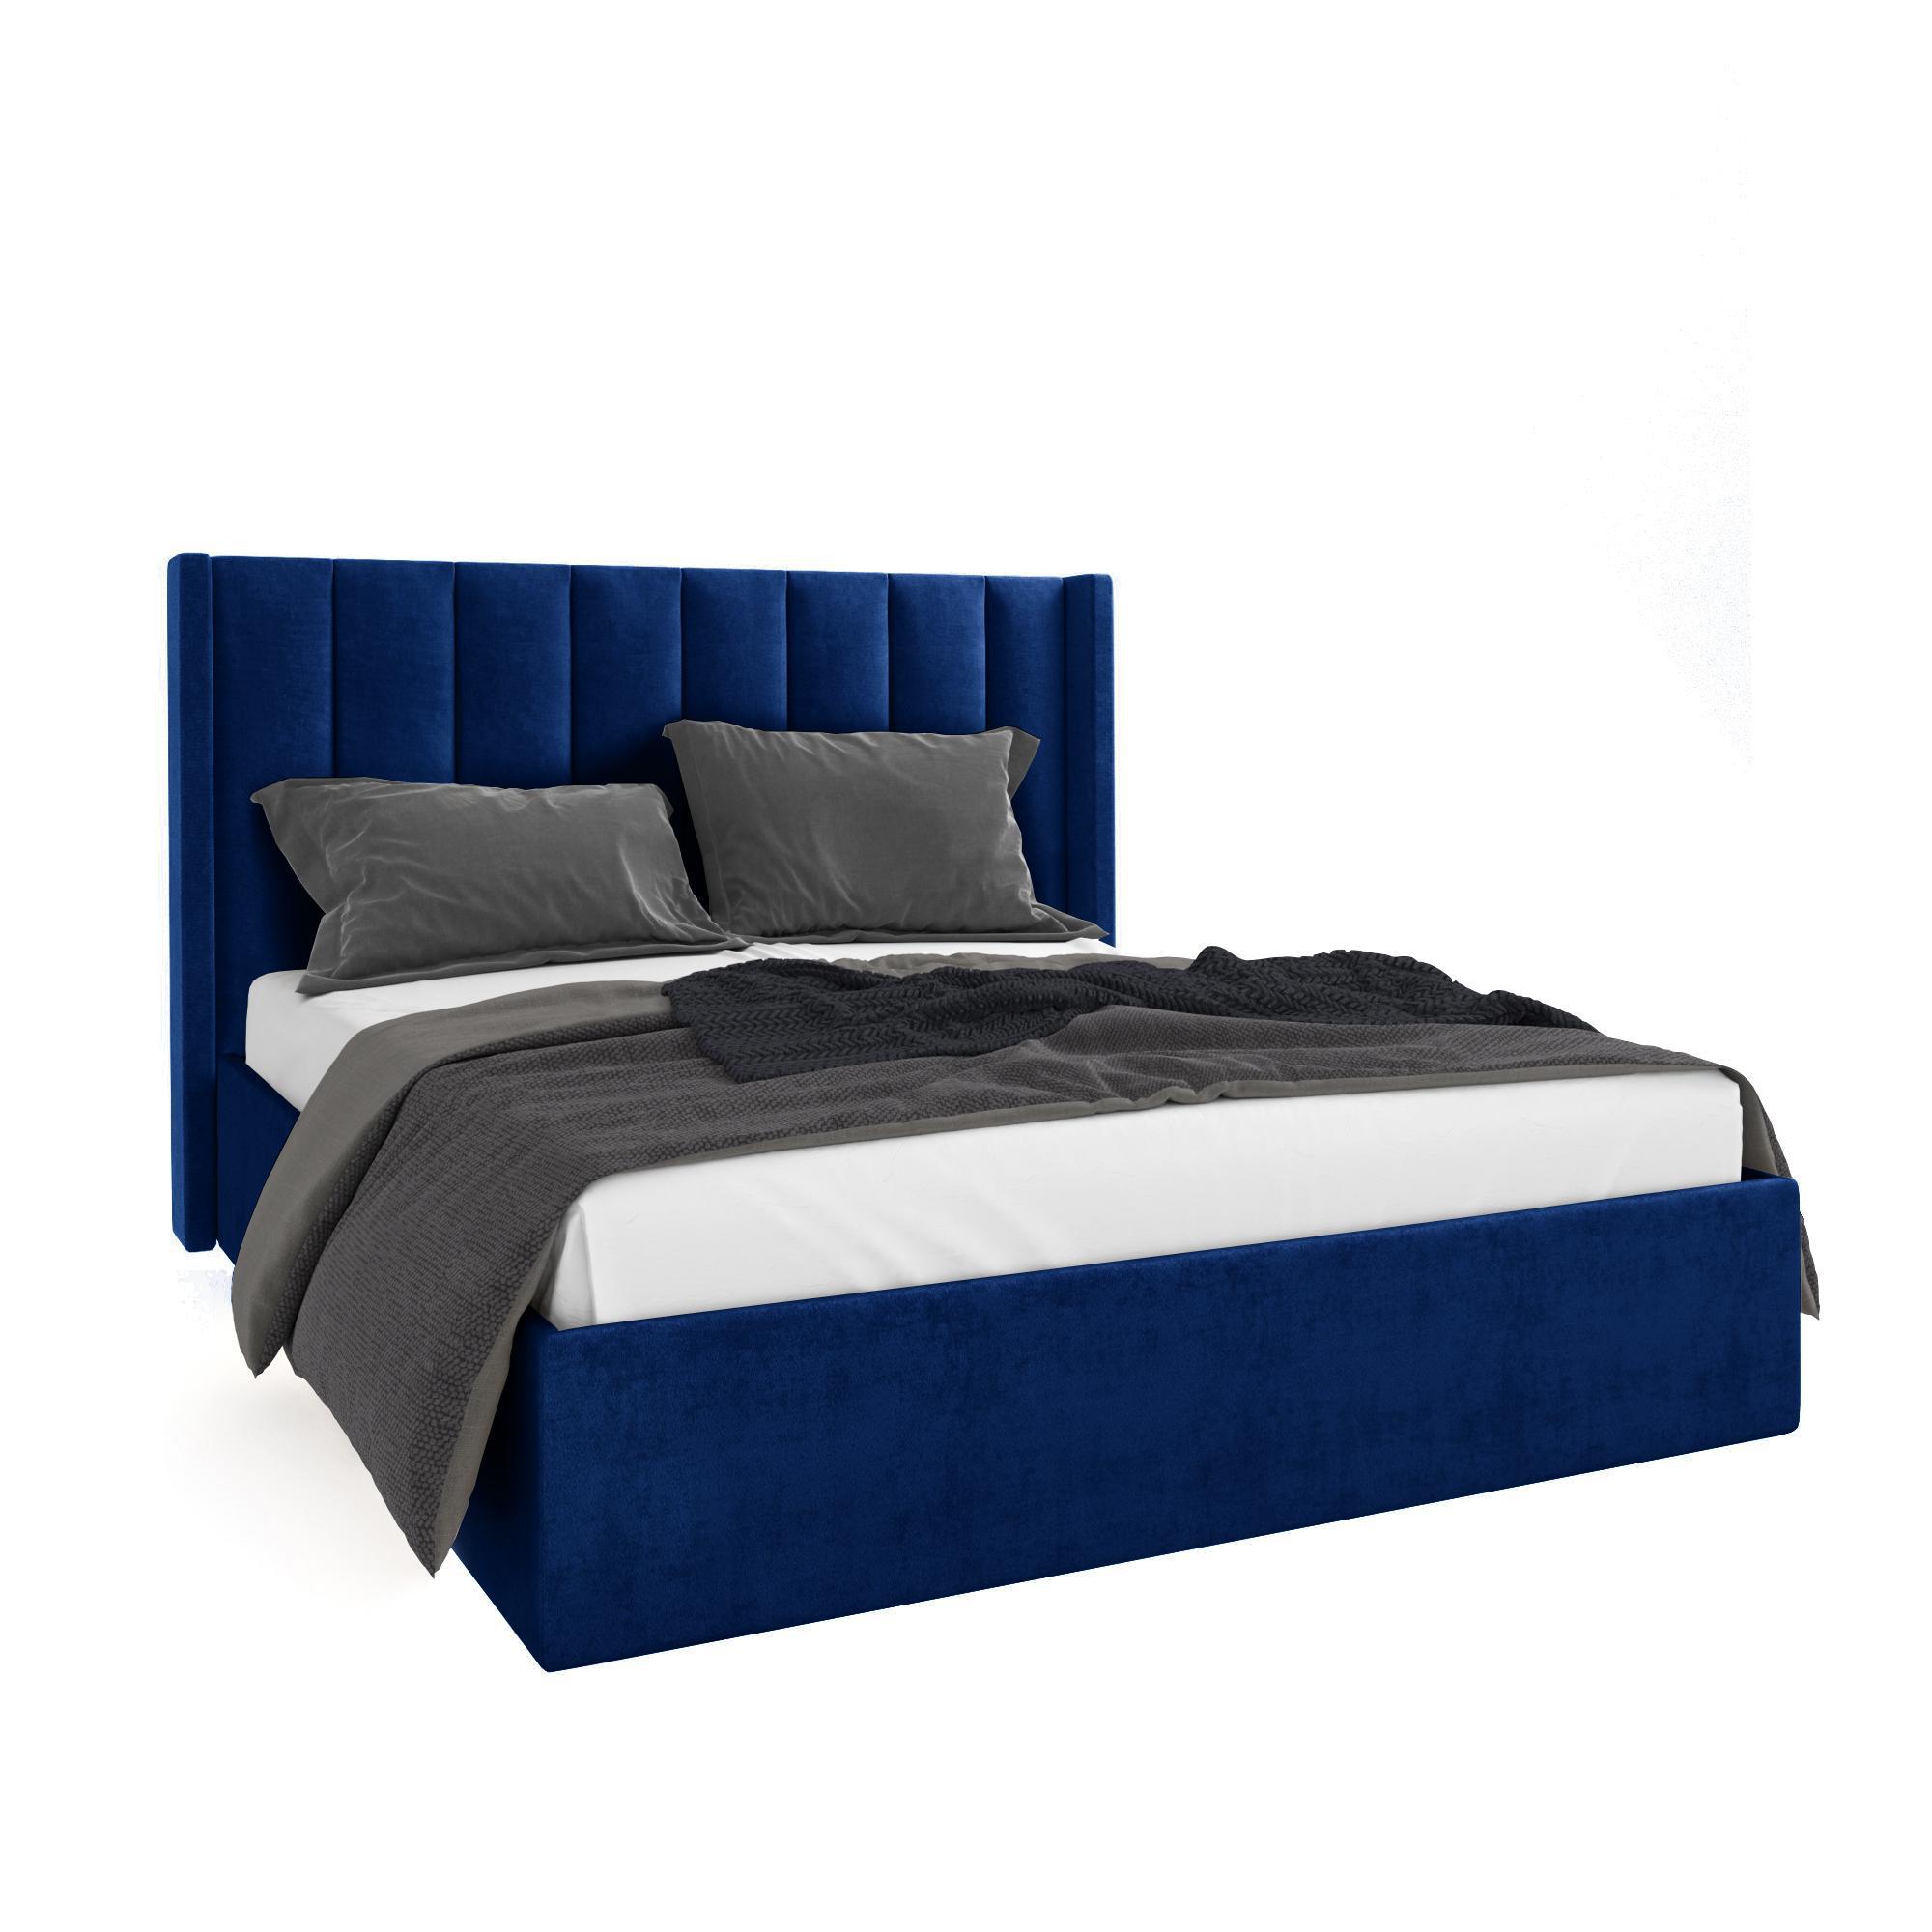 Кровать Жаклиз синяя 90х200 изображение товара